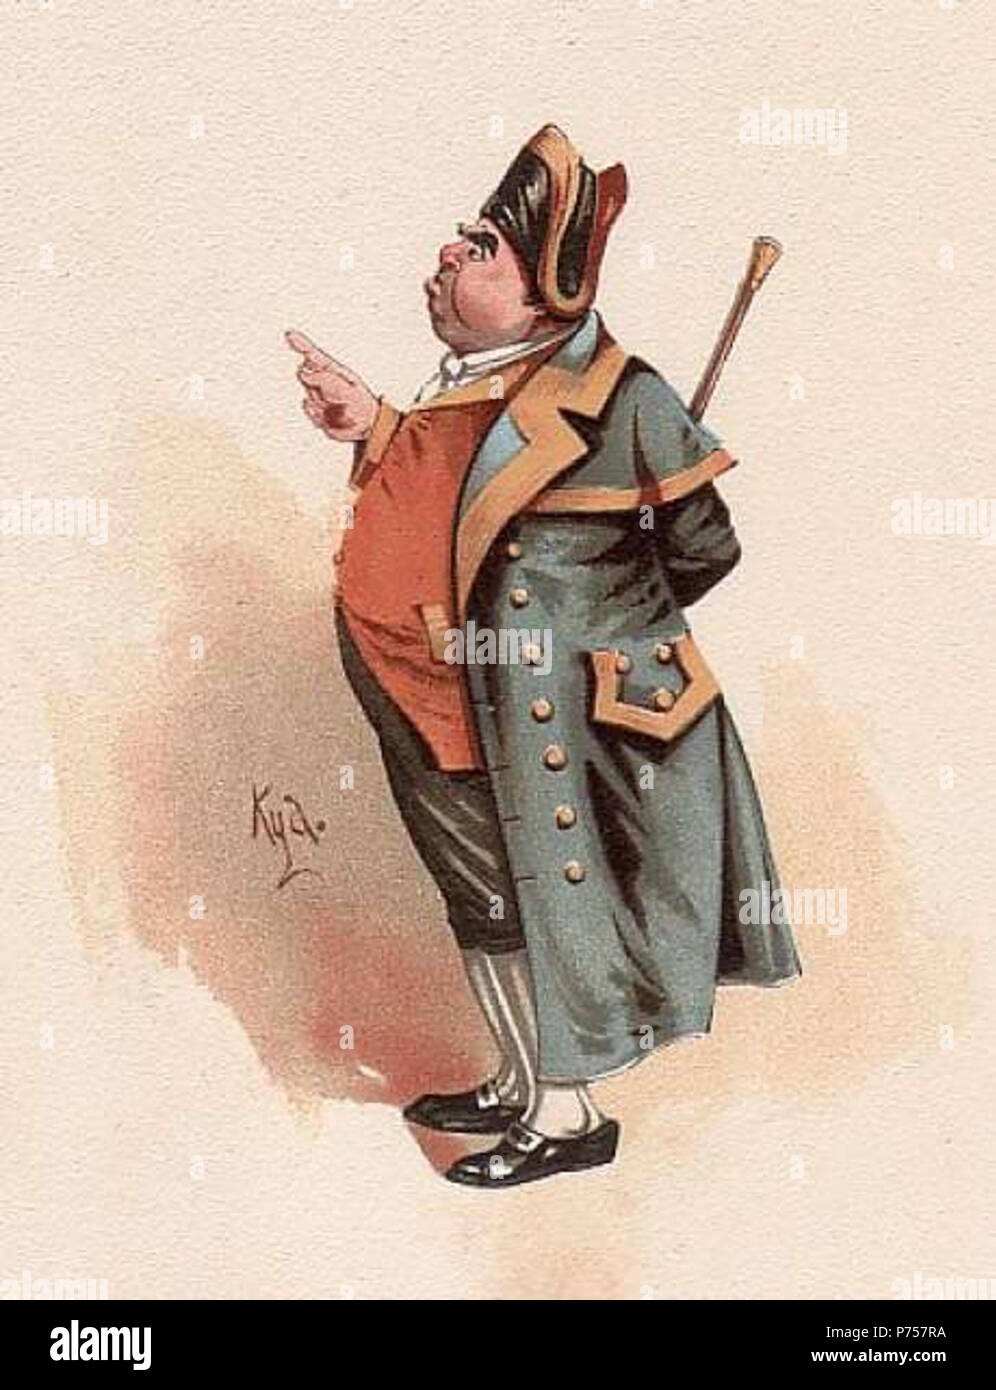 Afrika september slå op Englisch: Aquarell von Herrn Hummel von Oliver Twist. ca. 1890 27 Clarke -  hummeln Stockfotografie - Alamy